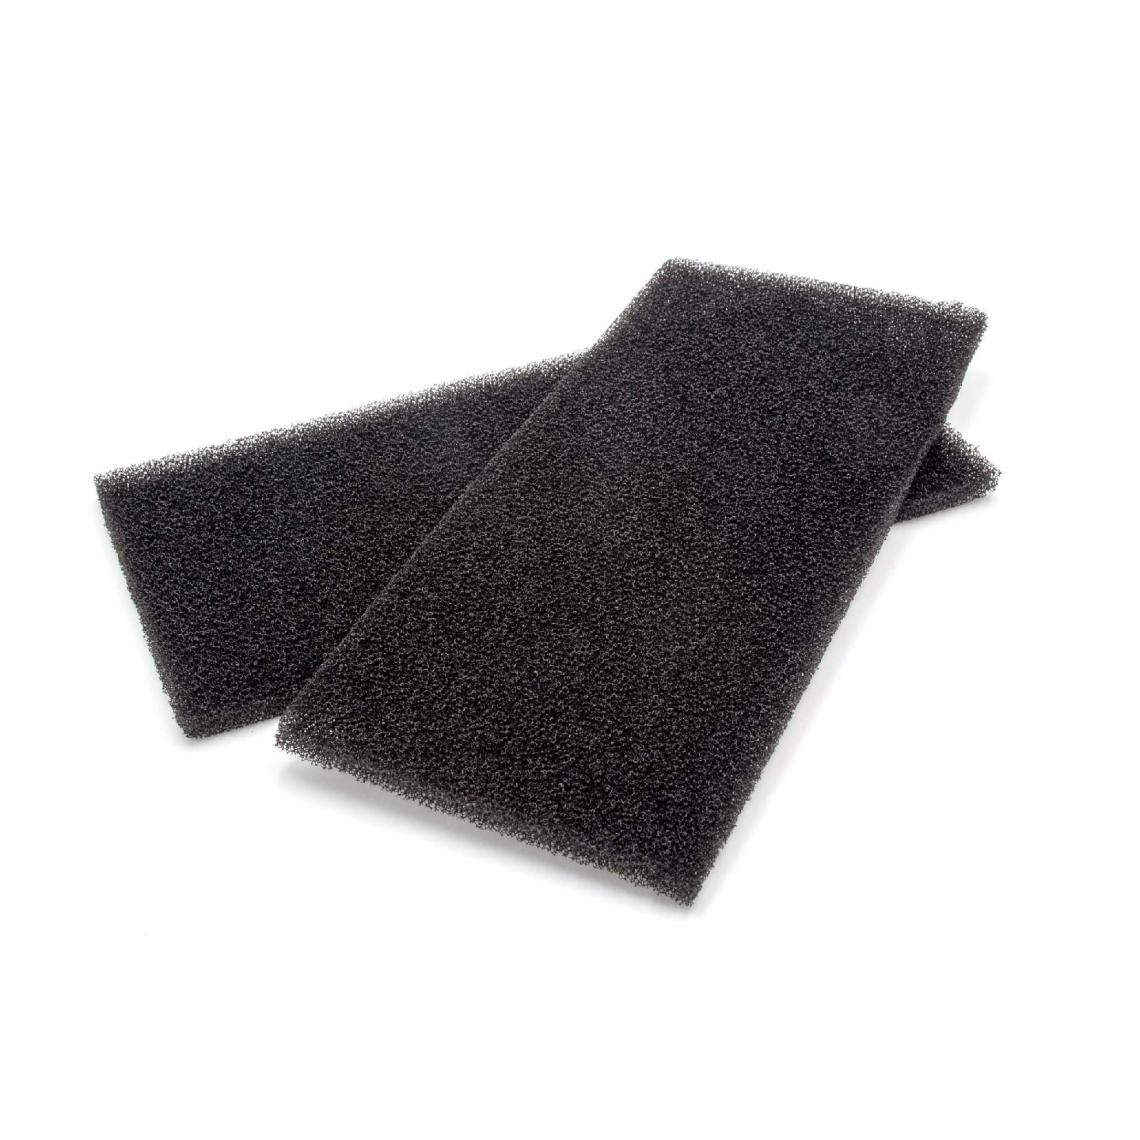 Vhbw - vhbw 2x filtres en mousse HX 481010354757 noirs pour jacuzzi sinche-linge échangeur de chaleur - Accessoire lavage, séchage